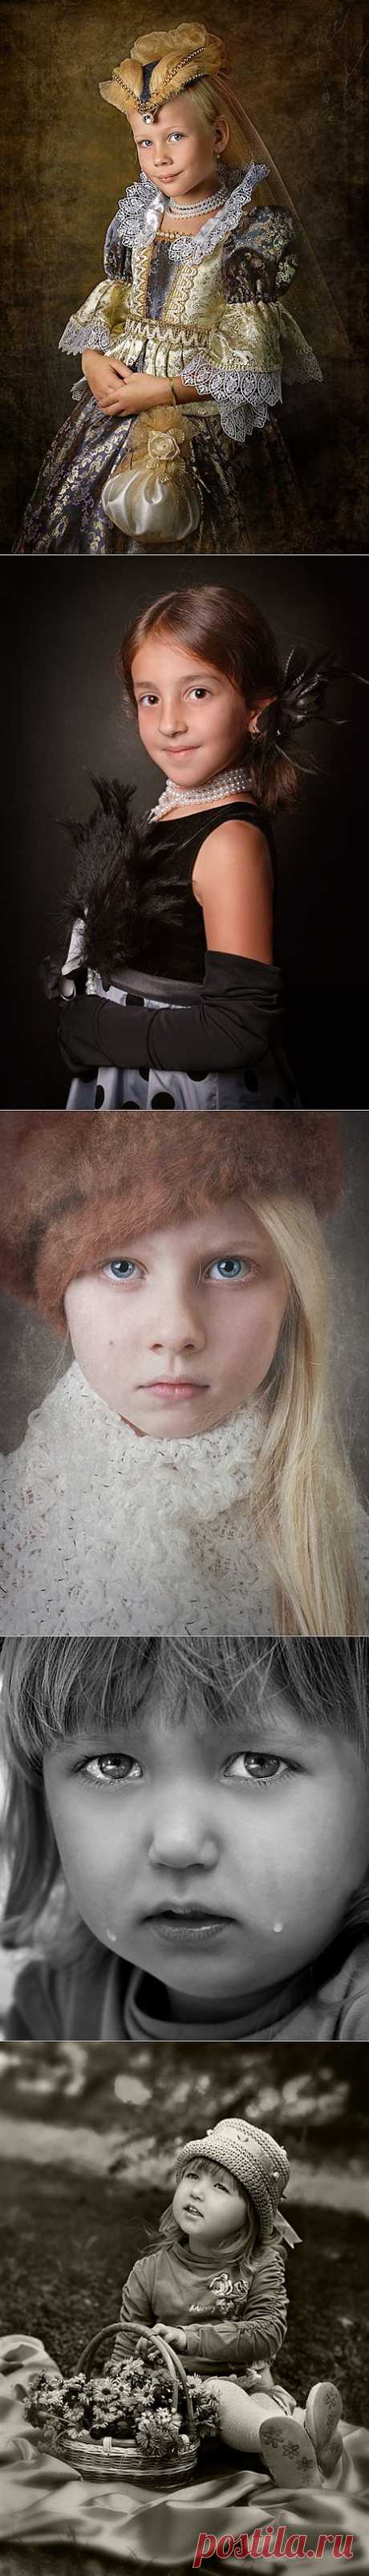 Красивые дети (40 фото) » Картины, художники, фотографы на Nevsepic